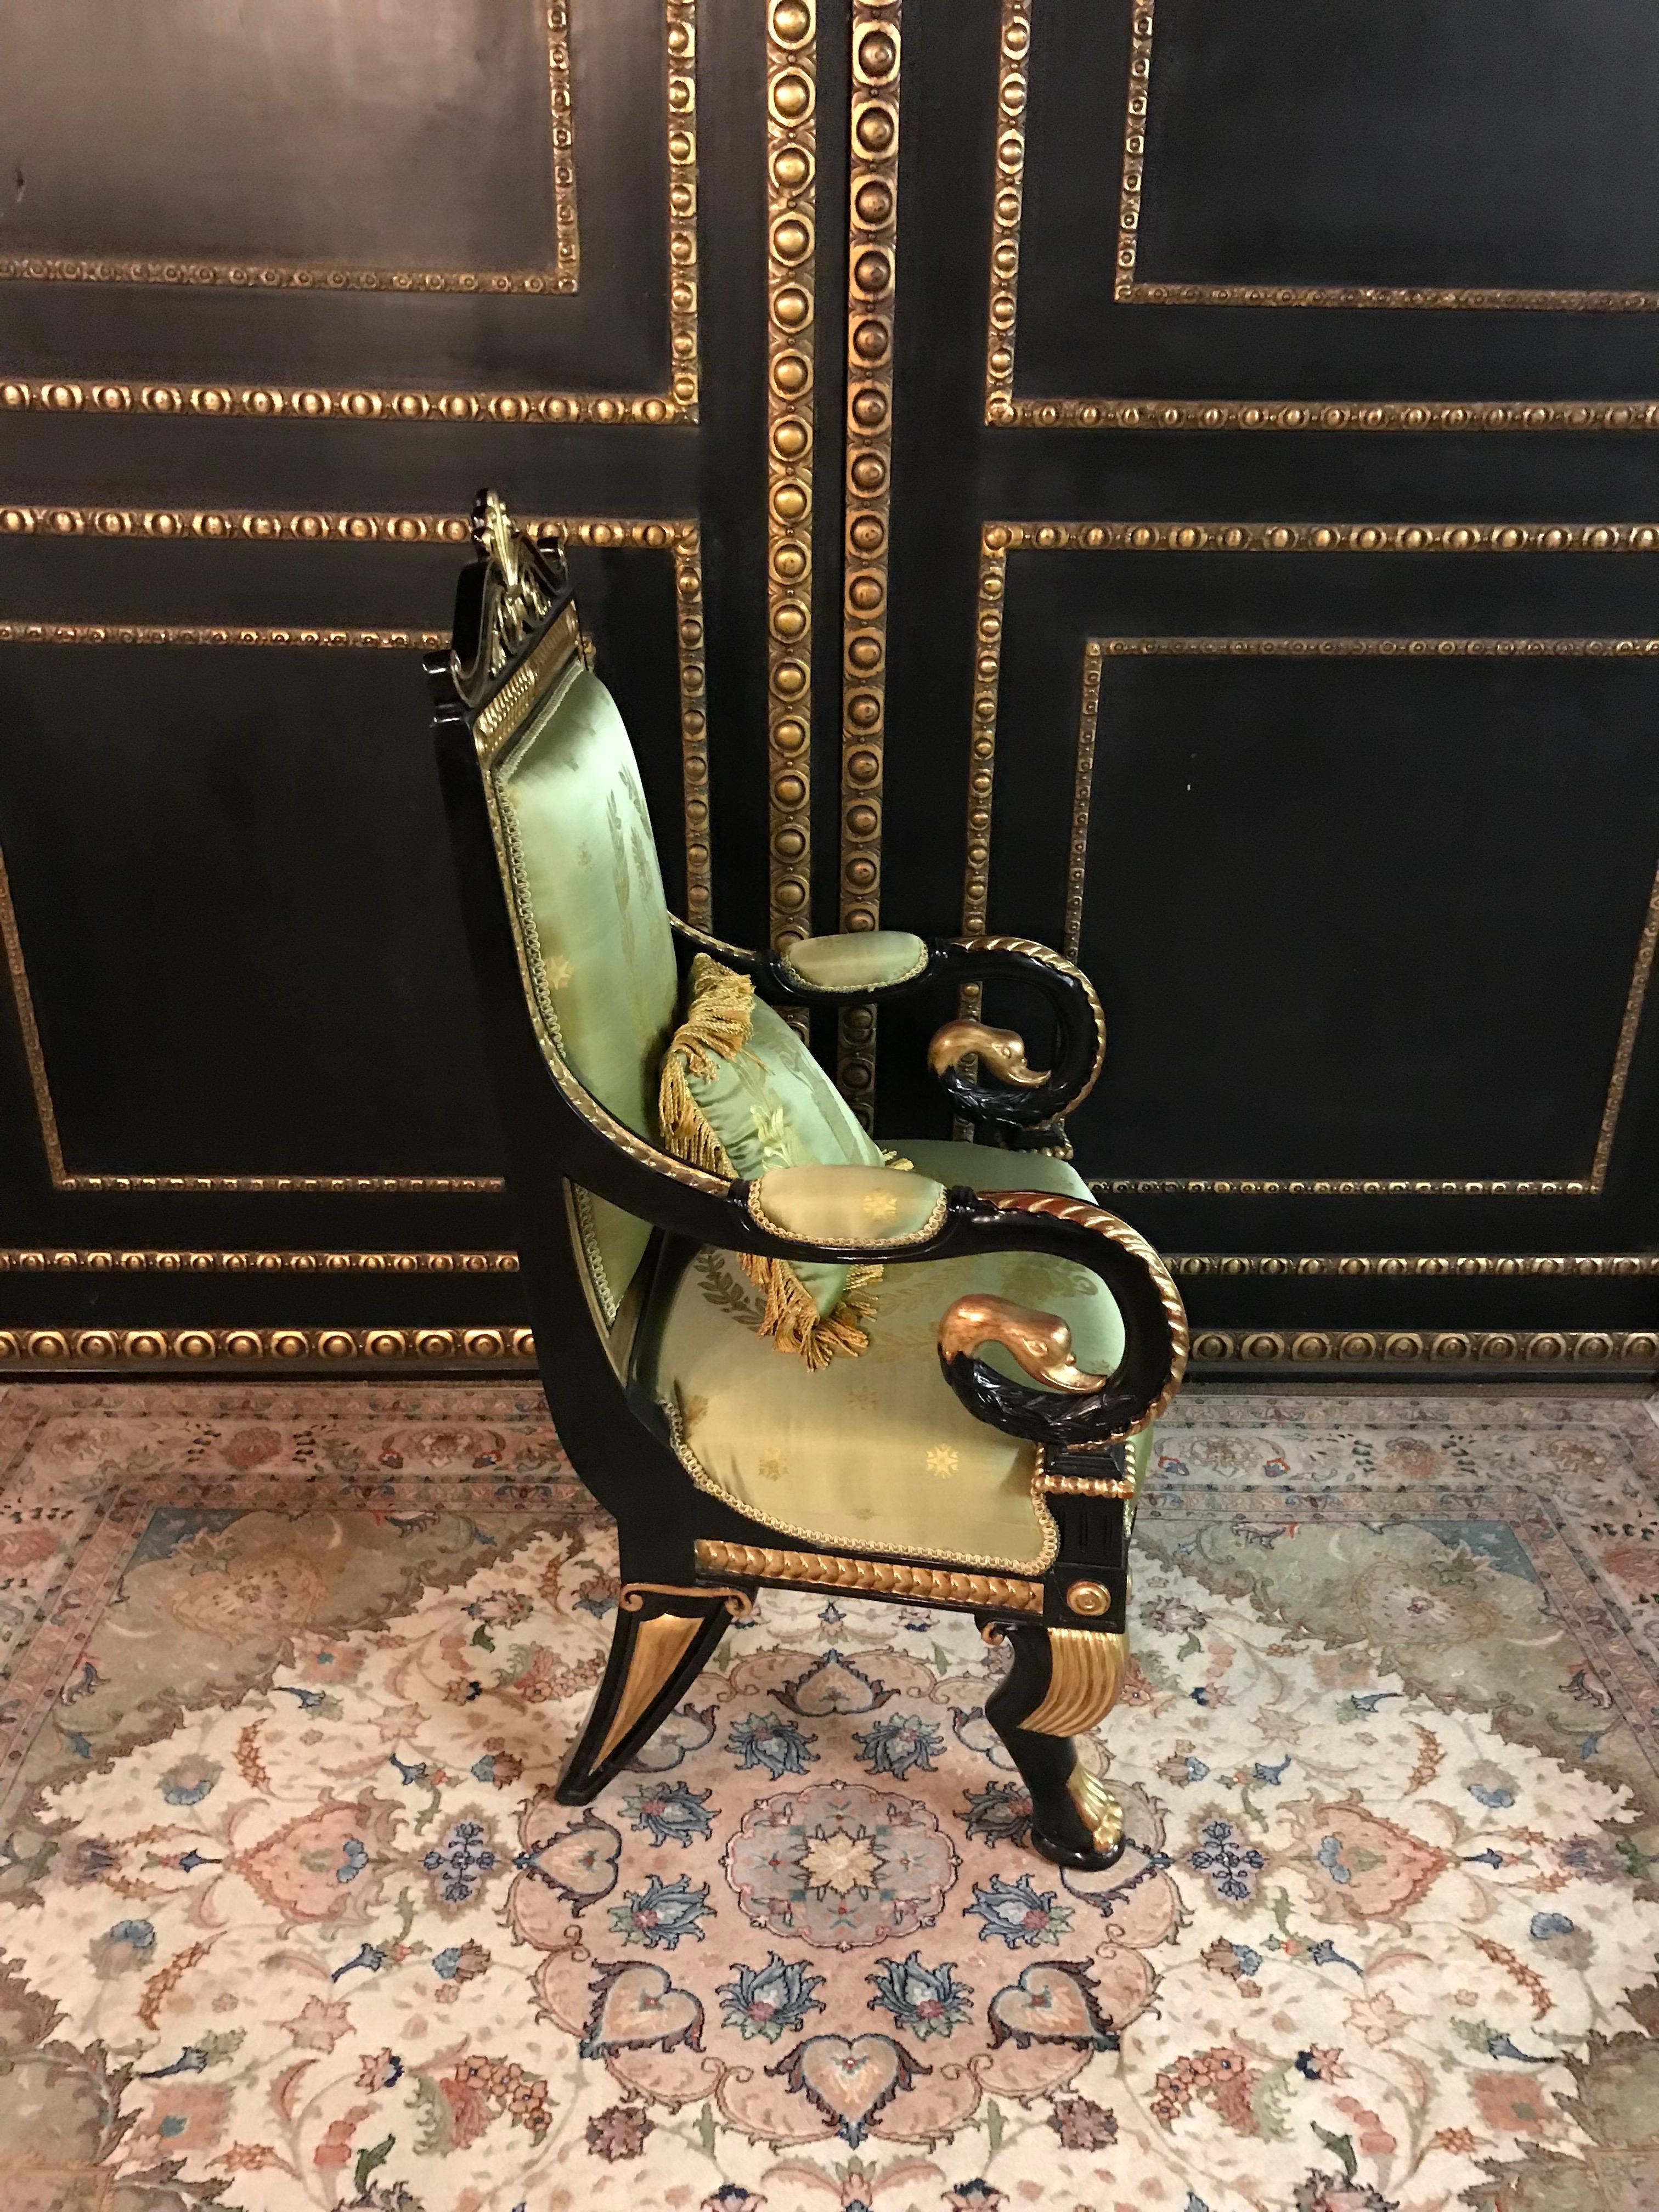 Stylish Napoleonic Swan Armchair in Empire Style (Handgeschnitzt)